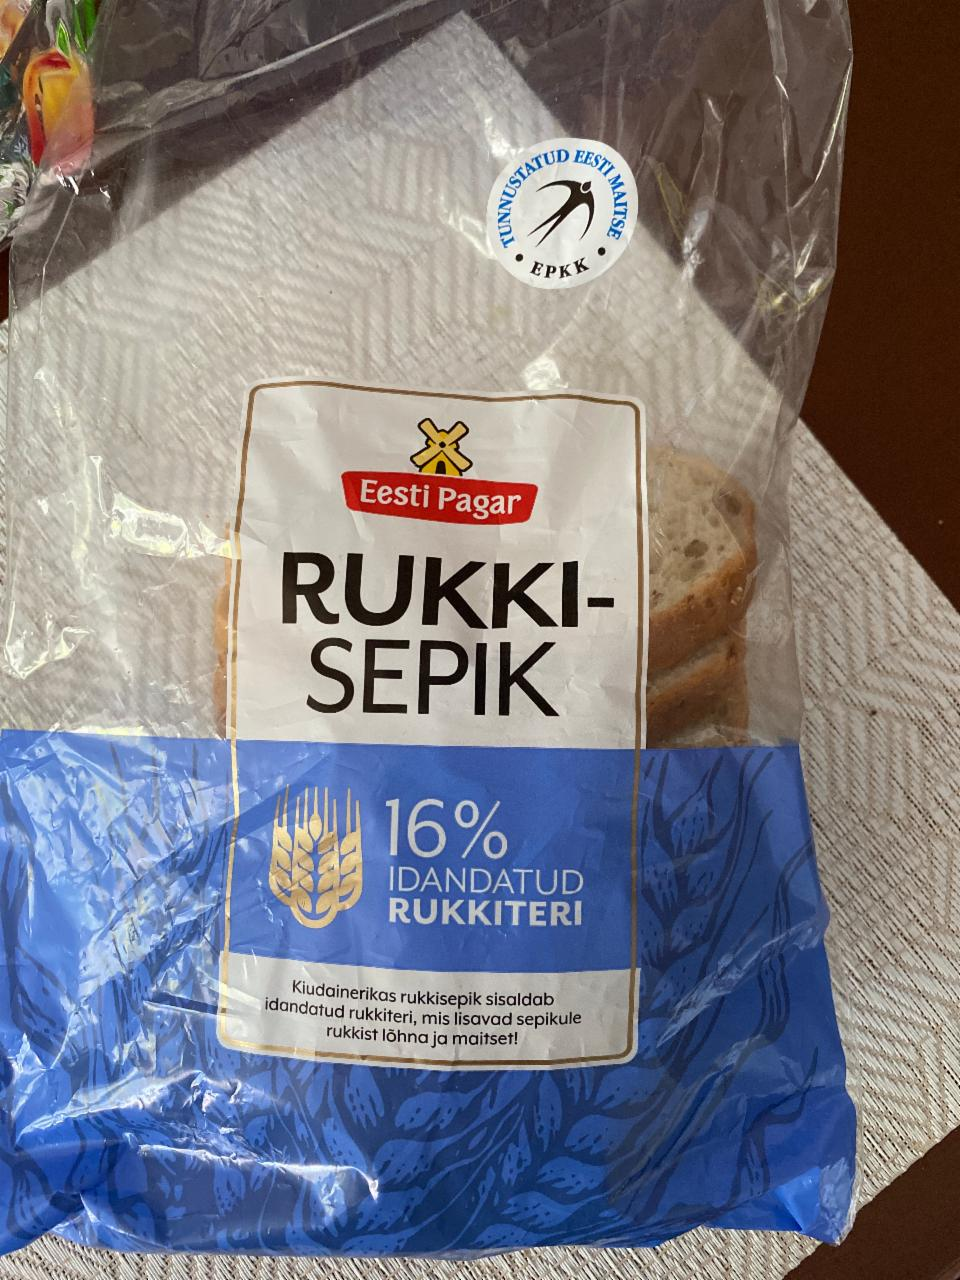 Фото - хлеб rukkisepik Eesti pagar